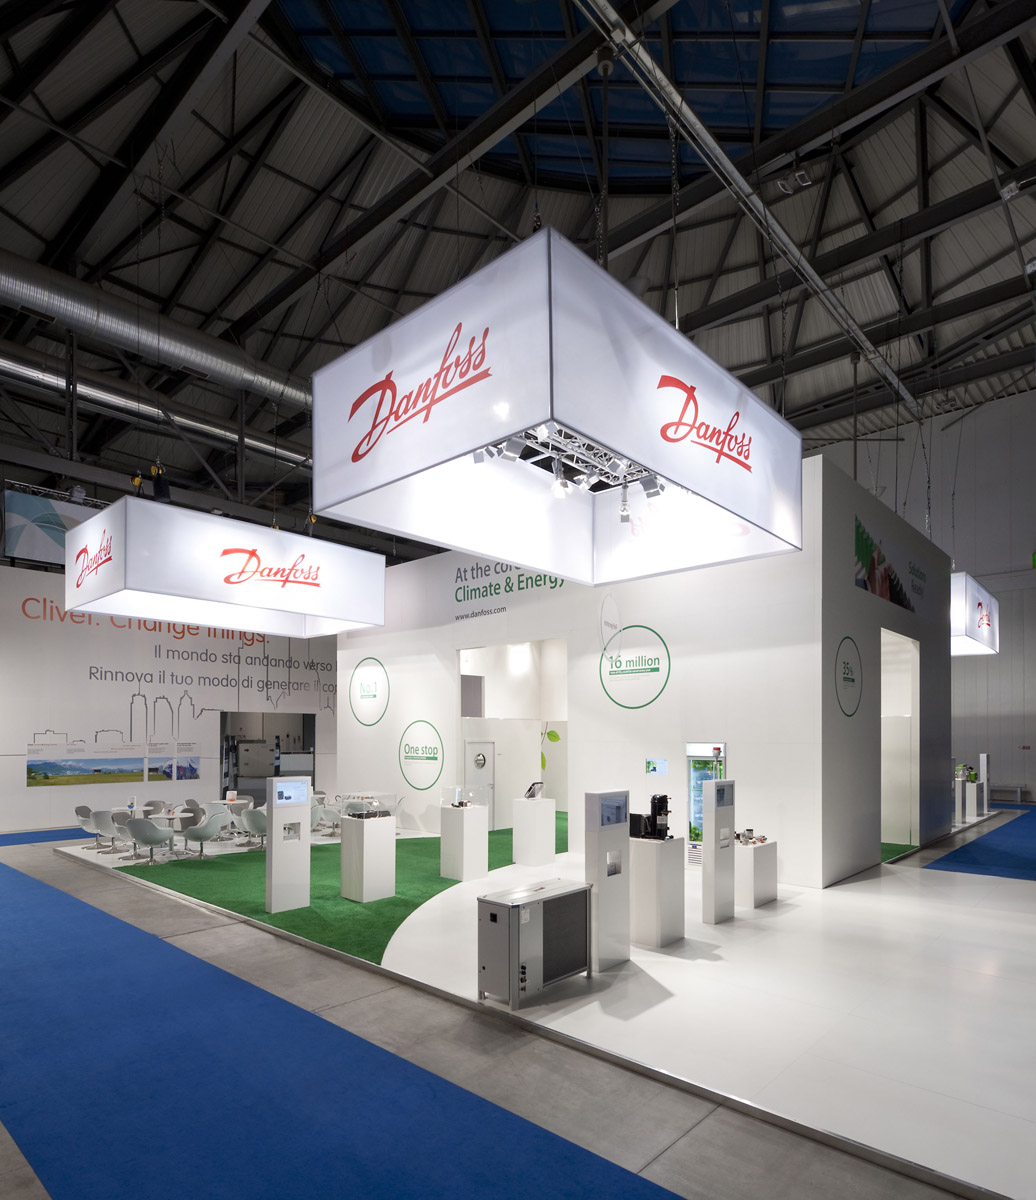 Danfoss Messauftritt in Mailand 2012 – Design und Konzept von WengerWittmann